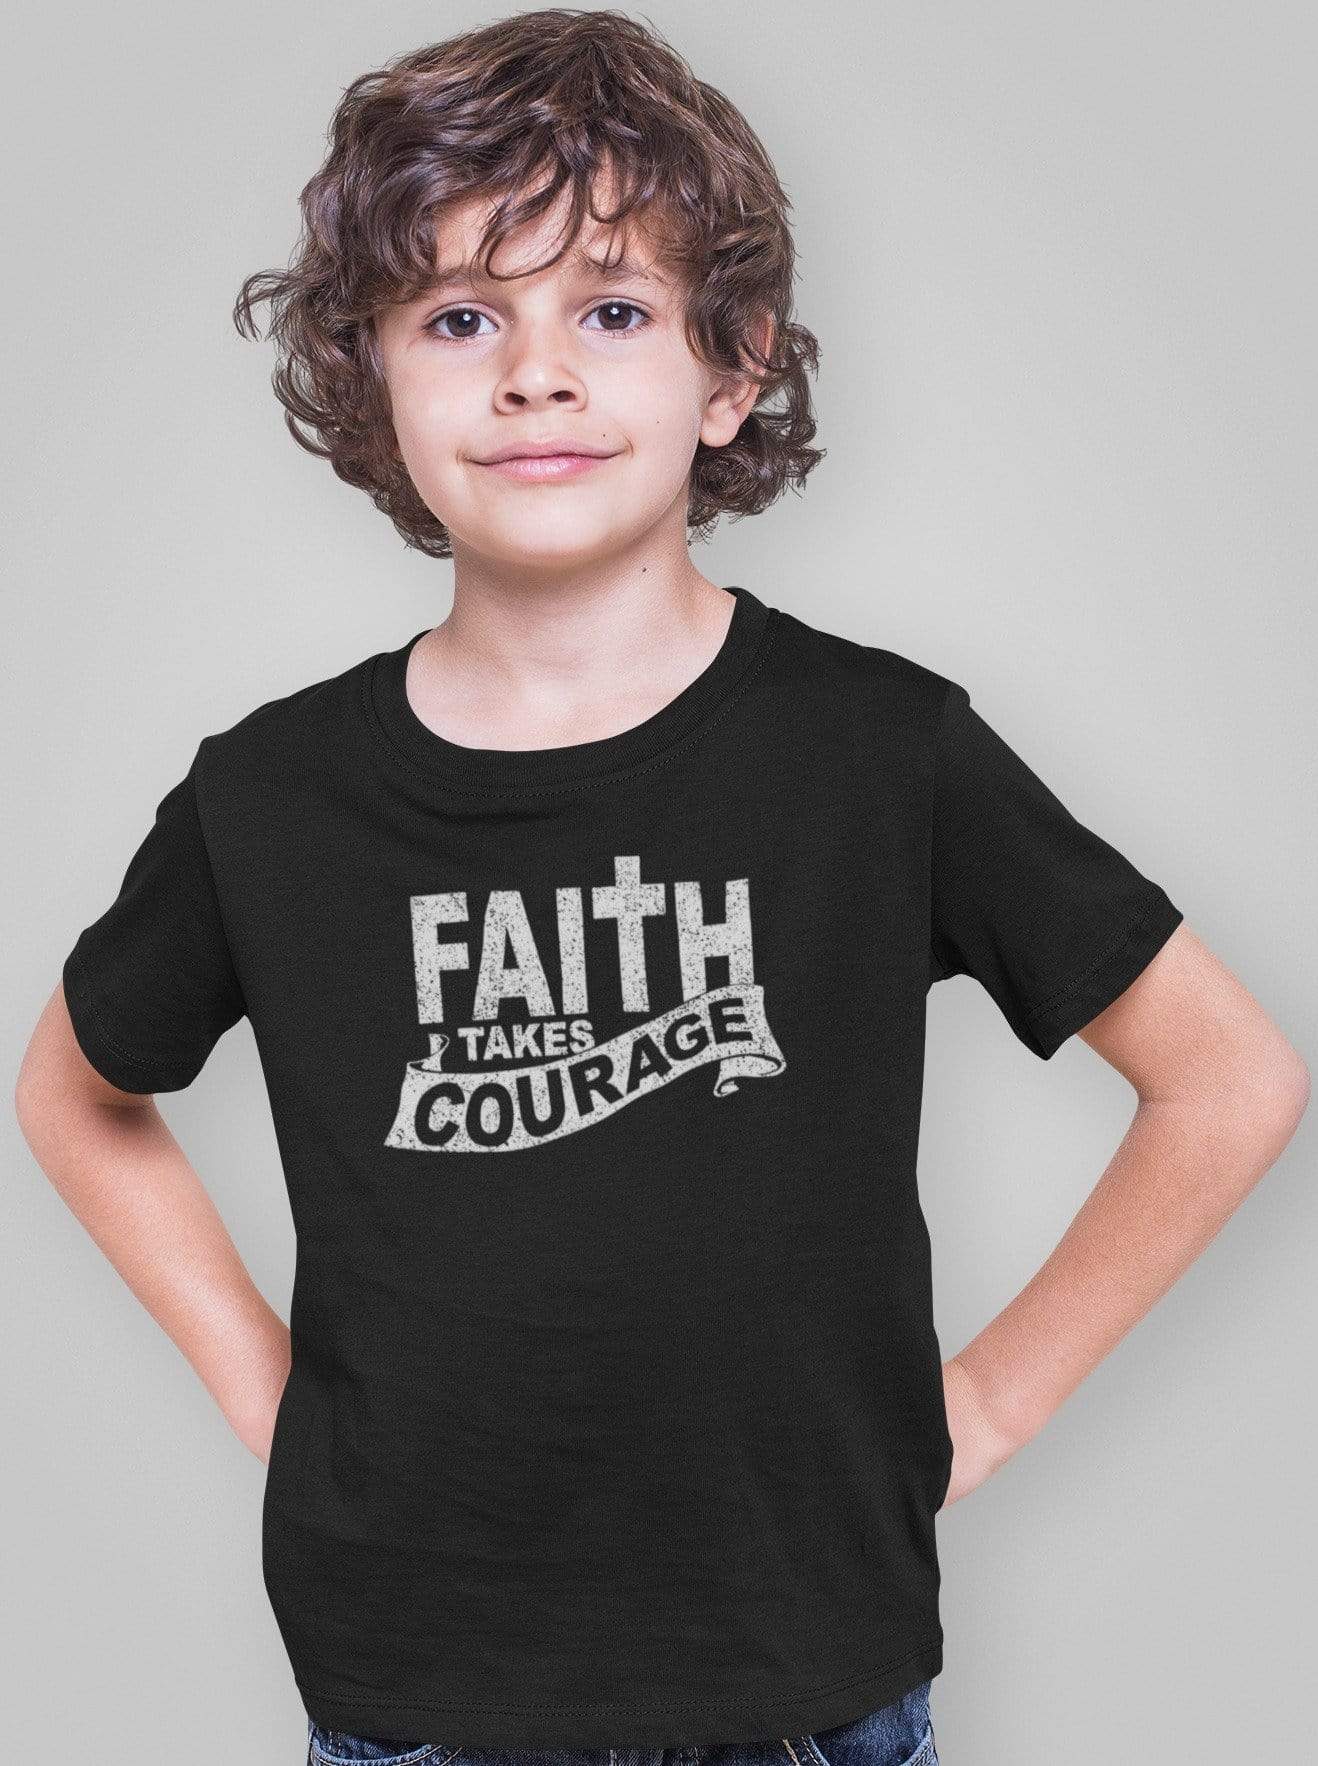 Living Words Kids Round Neck T Shirt Boy / 0-12 Mn / Black Faith takes courage